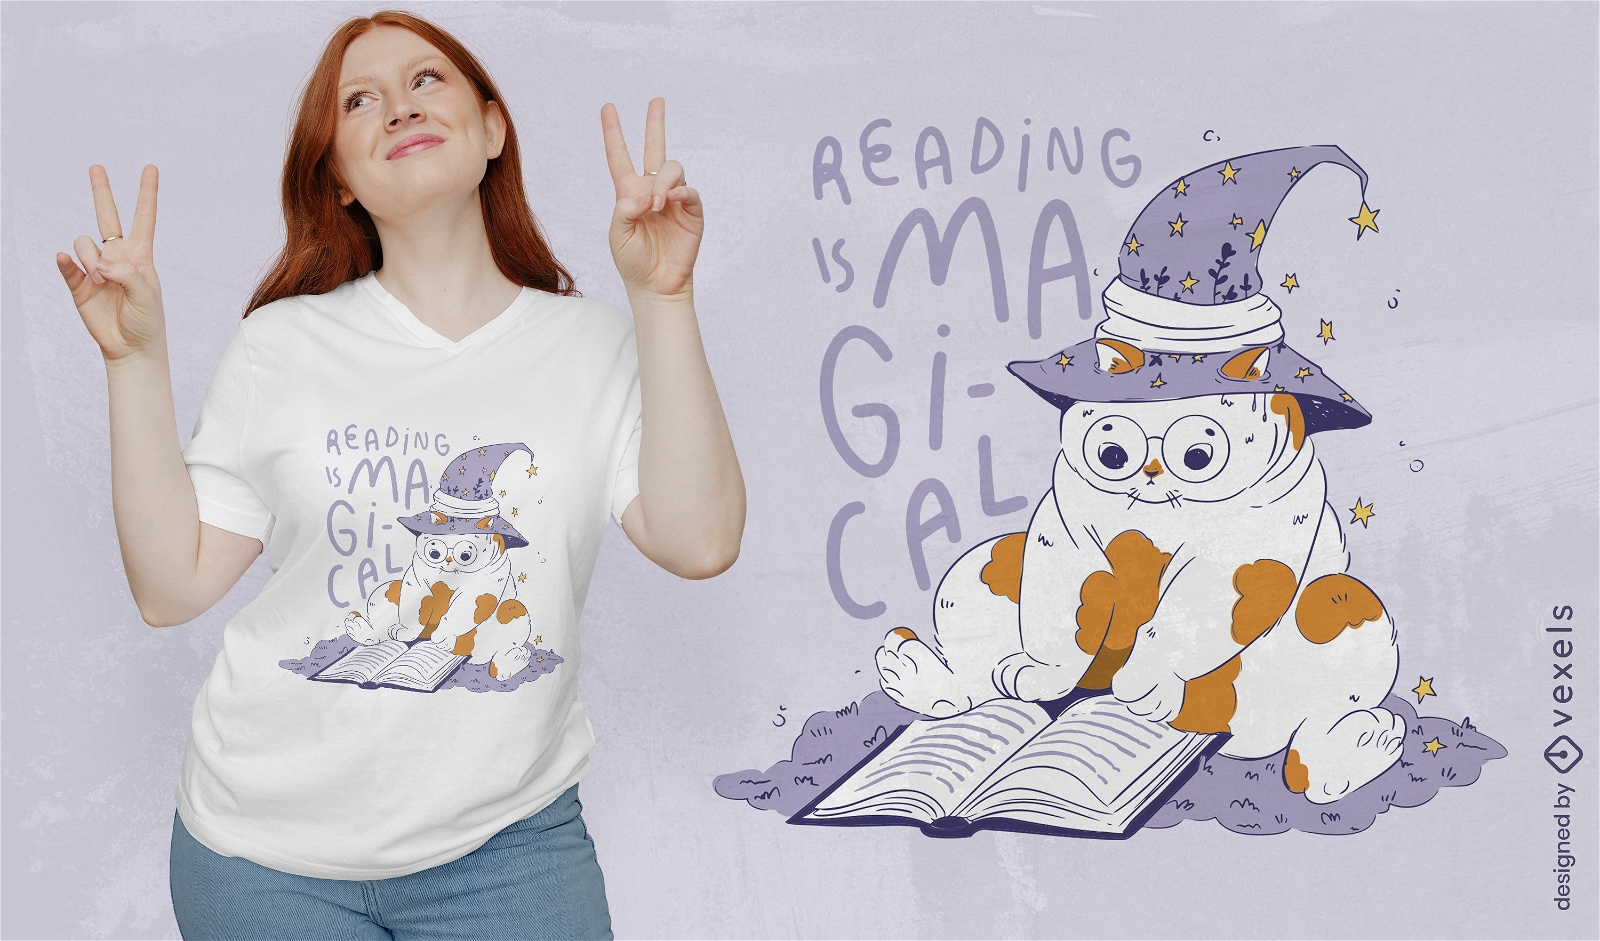 Gato lendo design de camiseta de livro m?gico